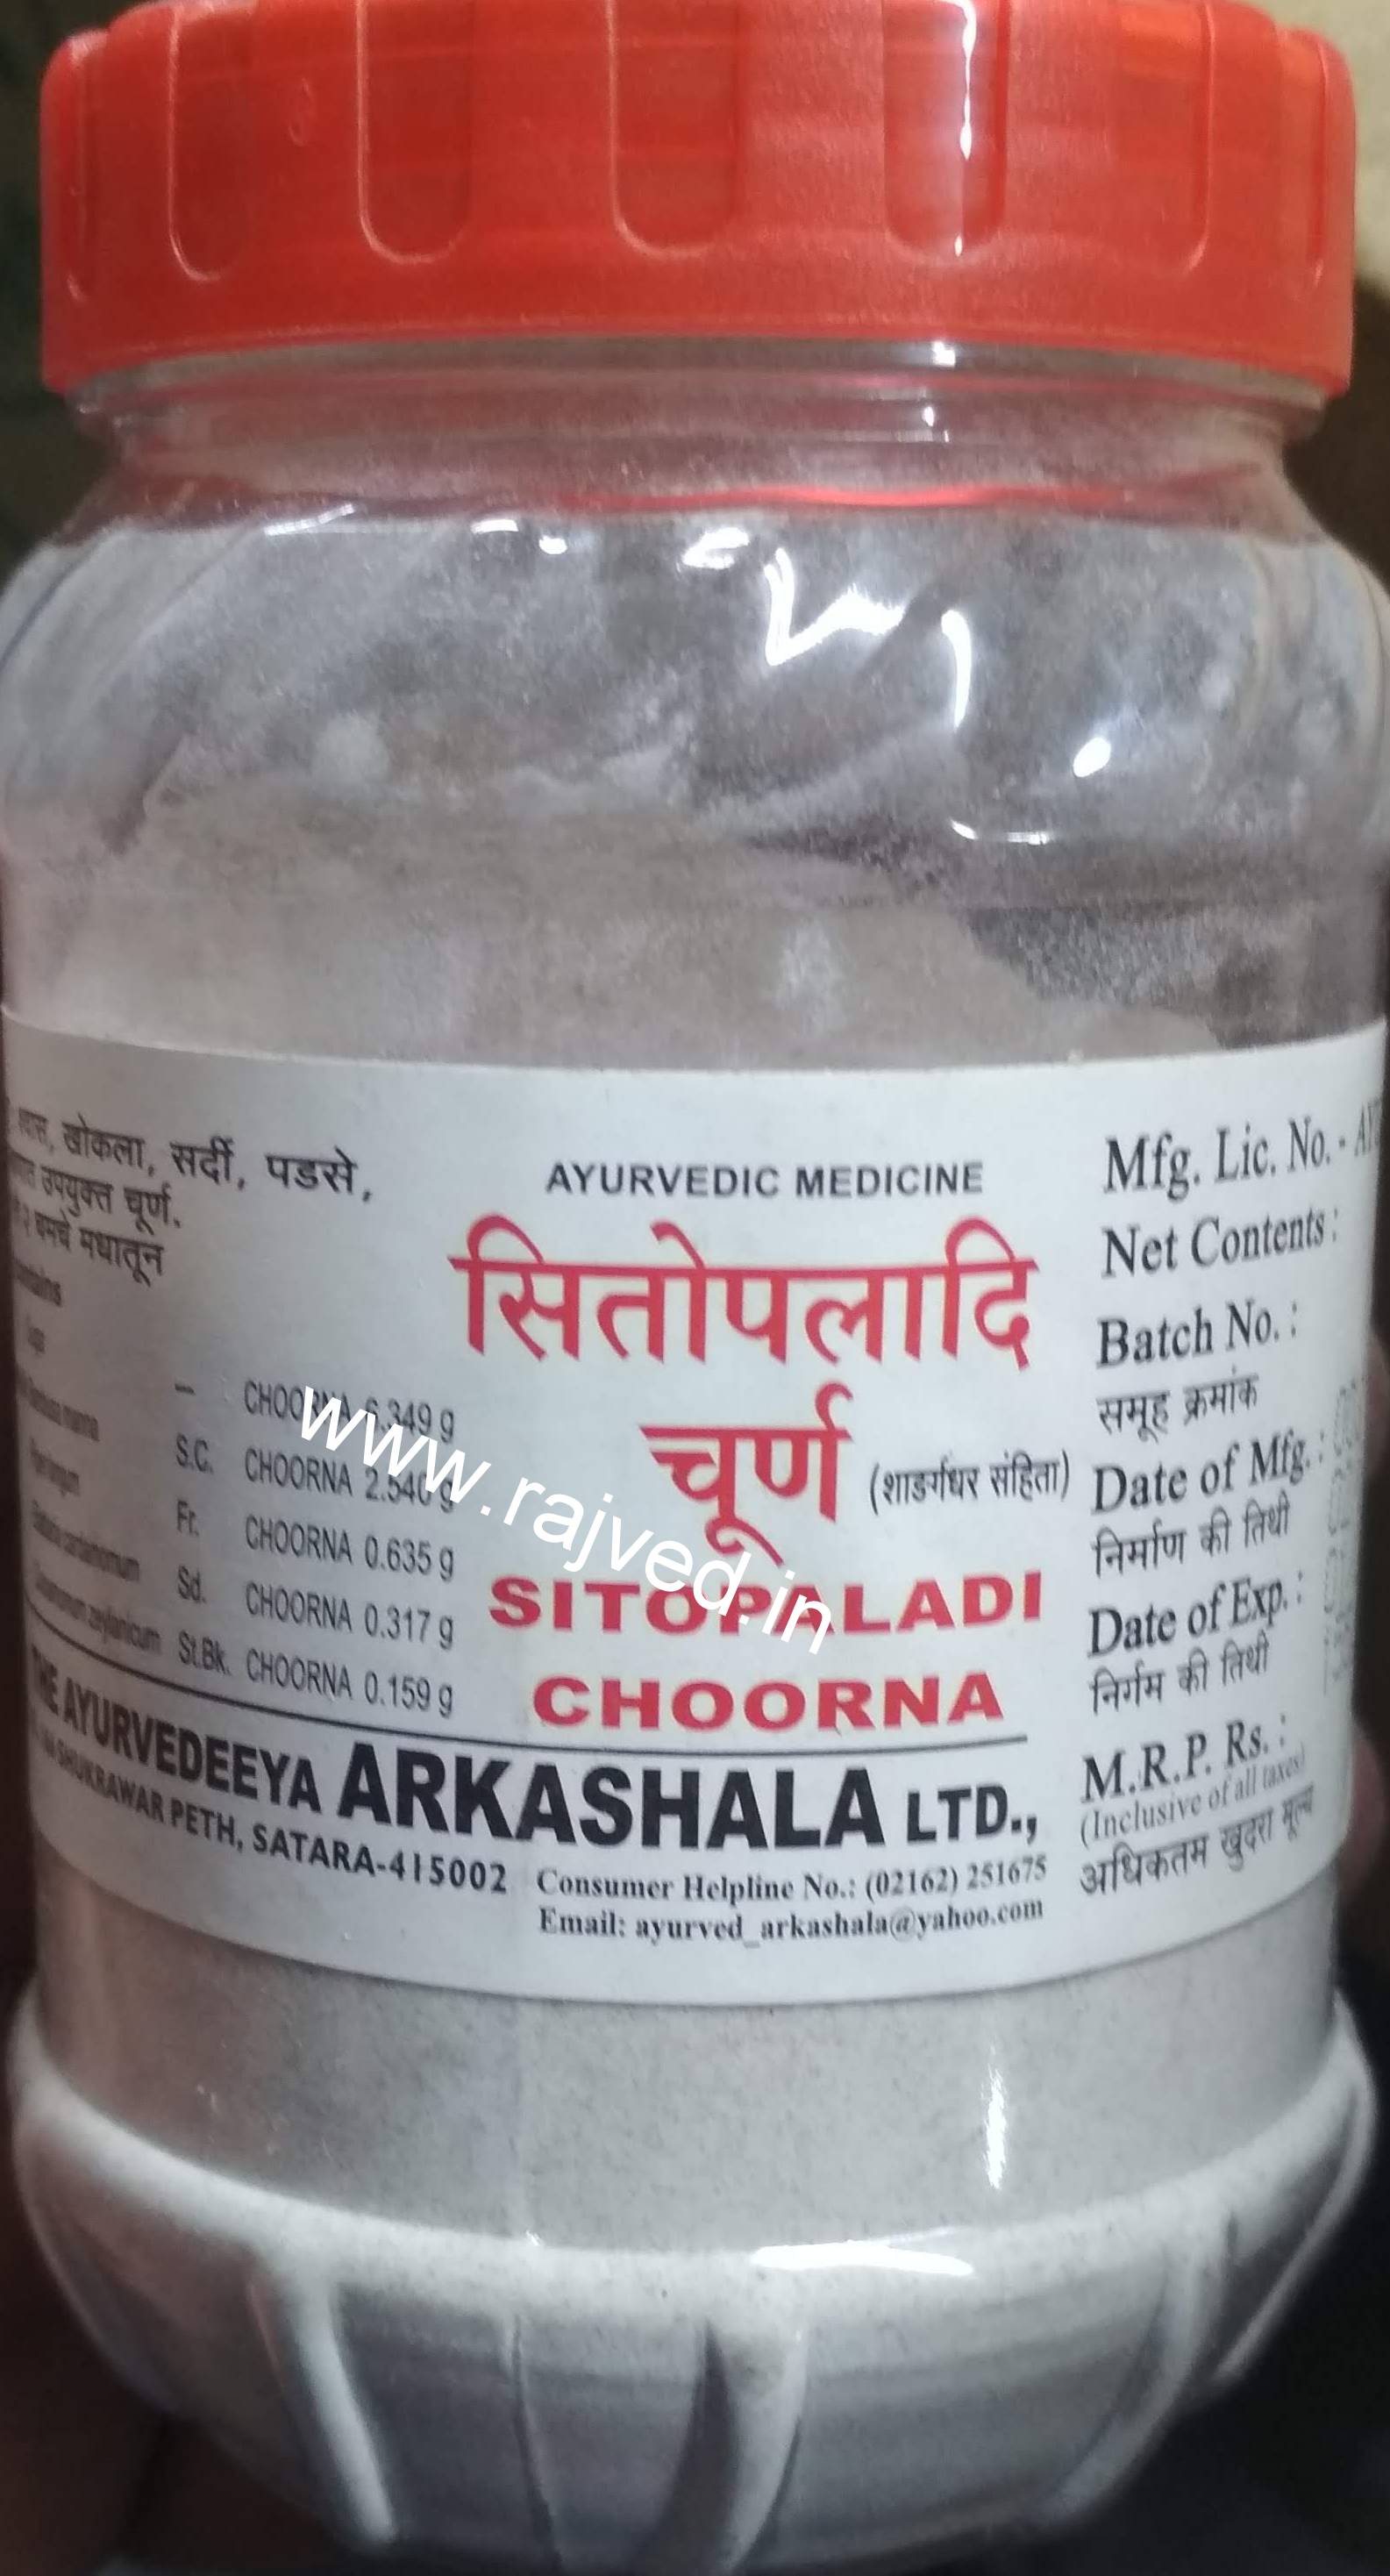 sitopaladi choorna 50 gm upto 15% off the ayurveda arkashala